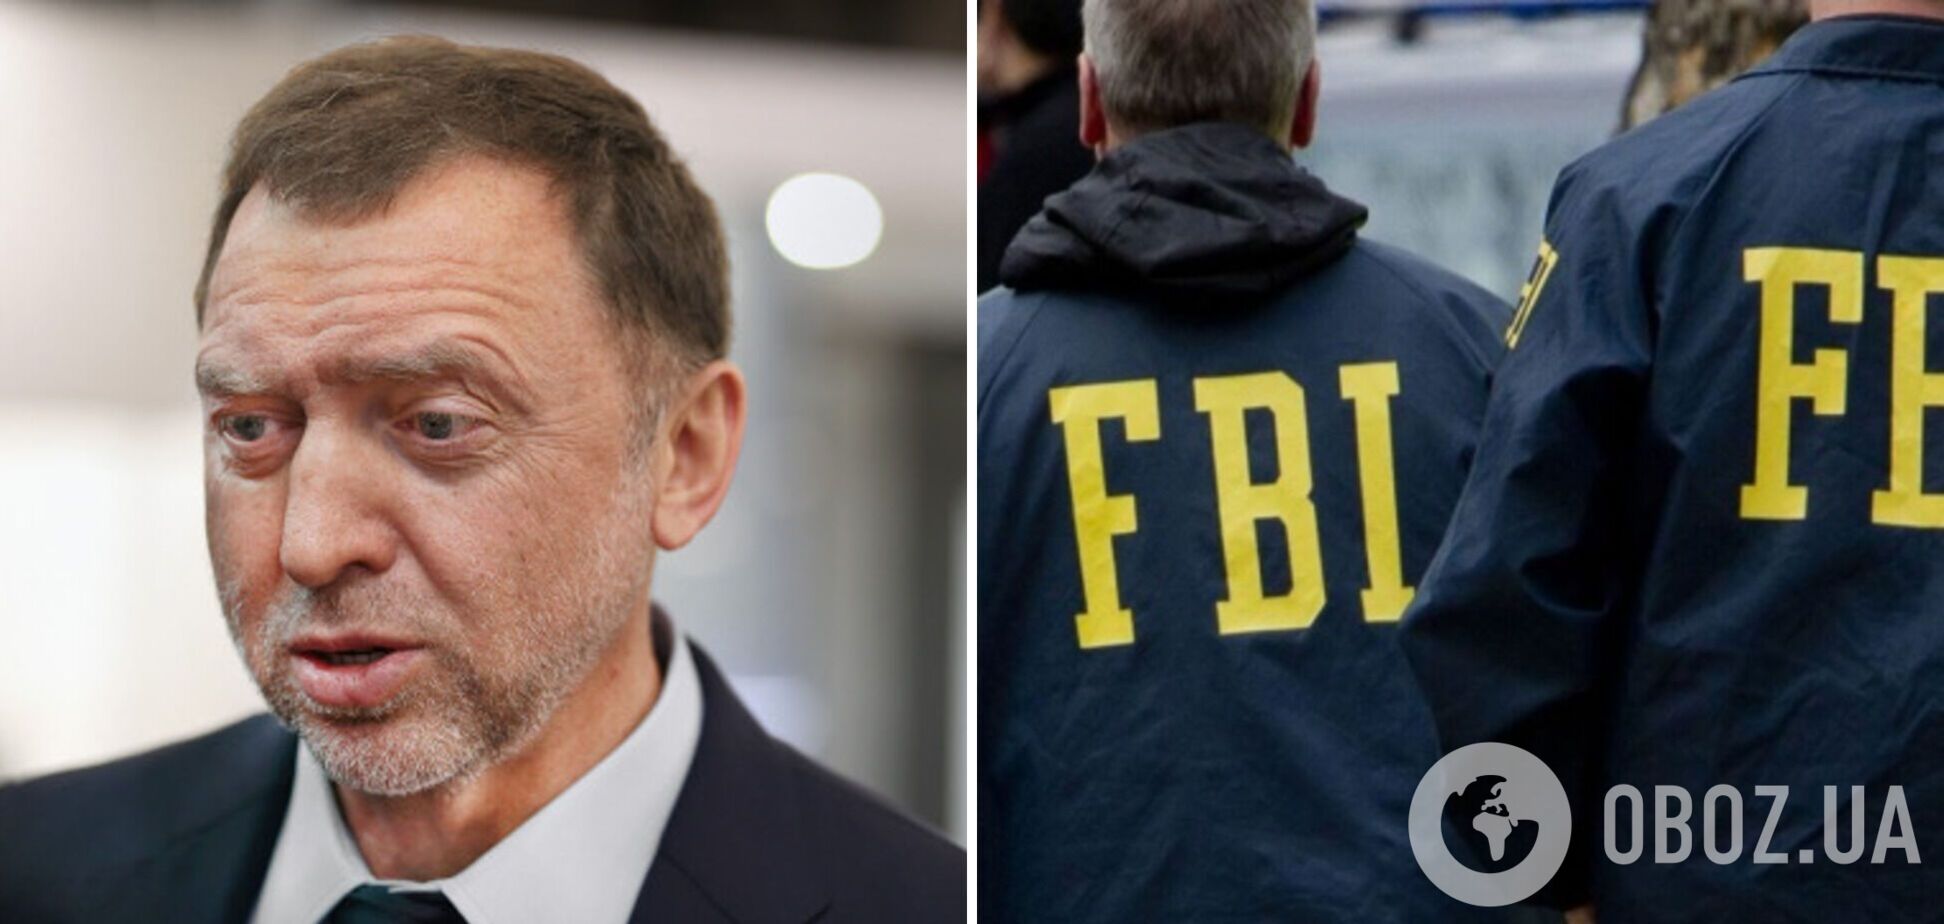 В США задержали бывшего агента ФБР, сотрудничавшего с российским олигархом Дерипаской: громкие детали скандал